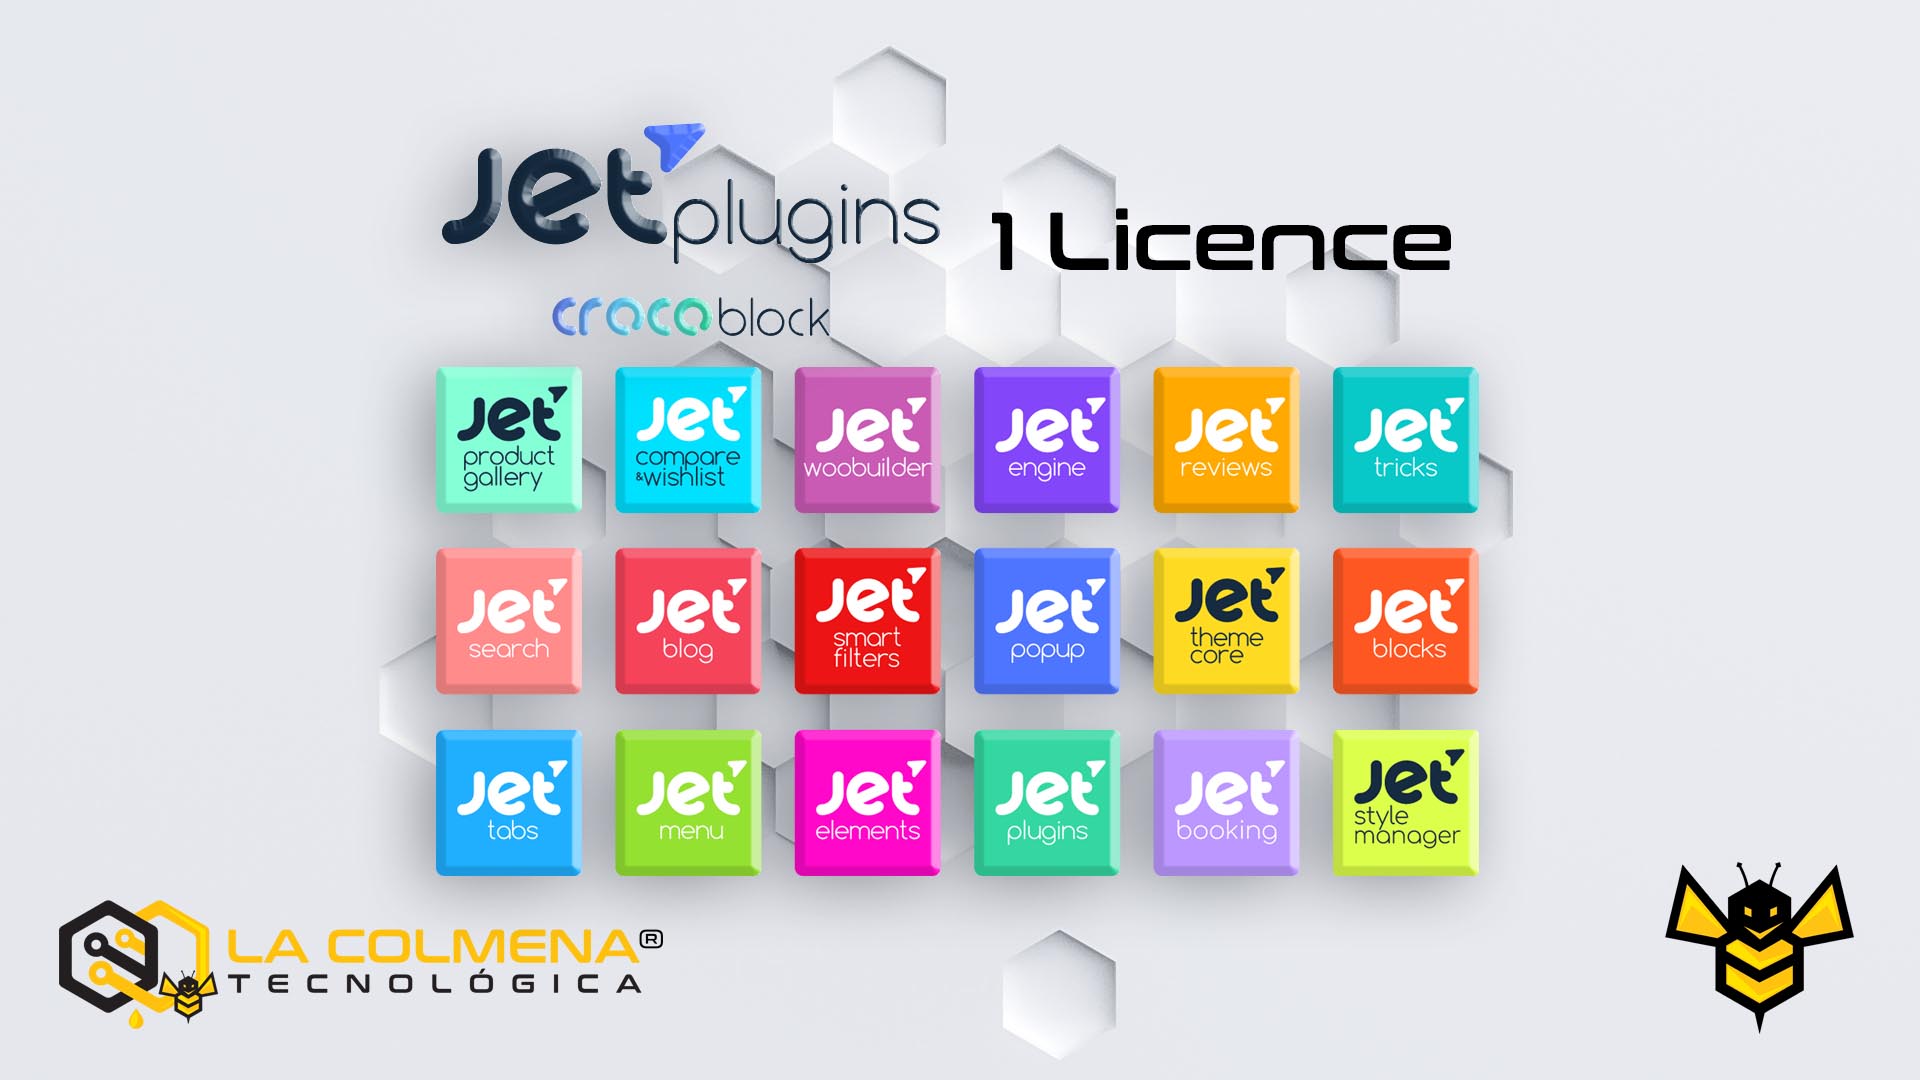 1 Licence Crocoblock JetPlugins